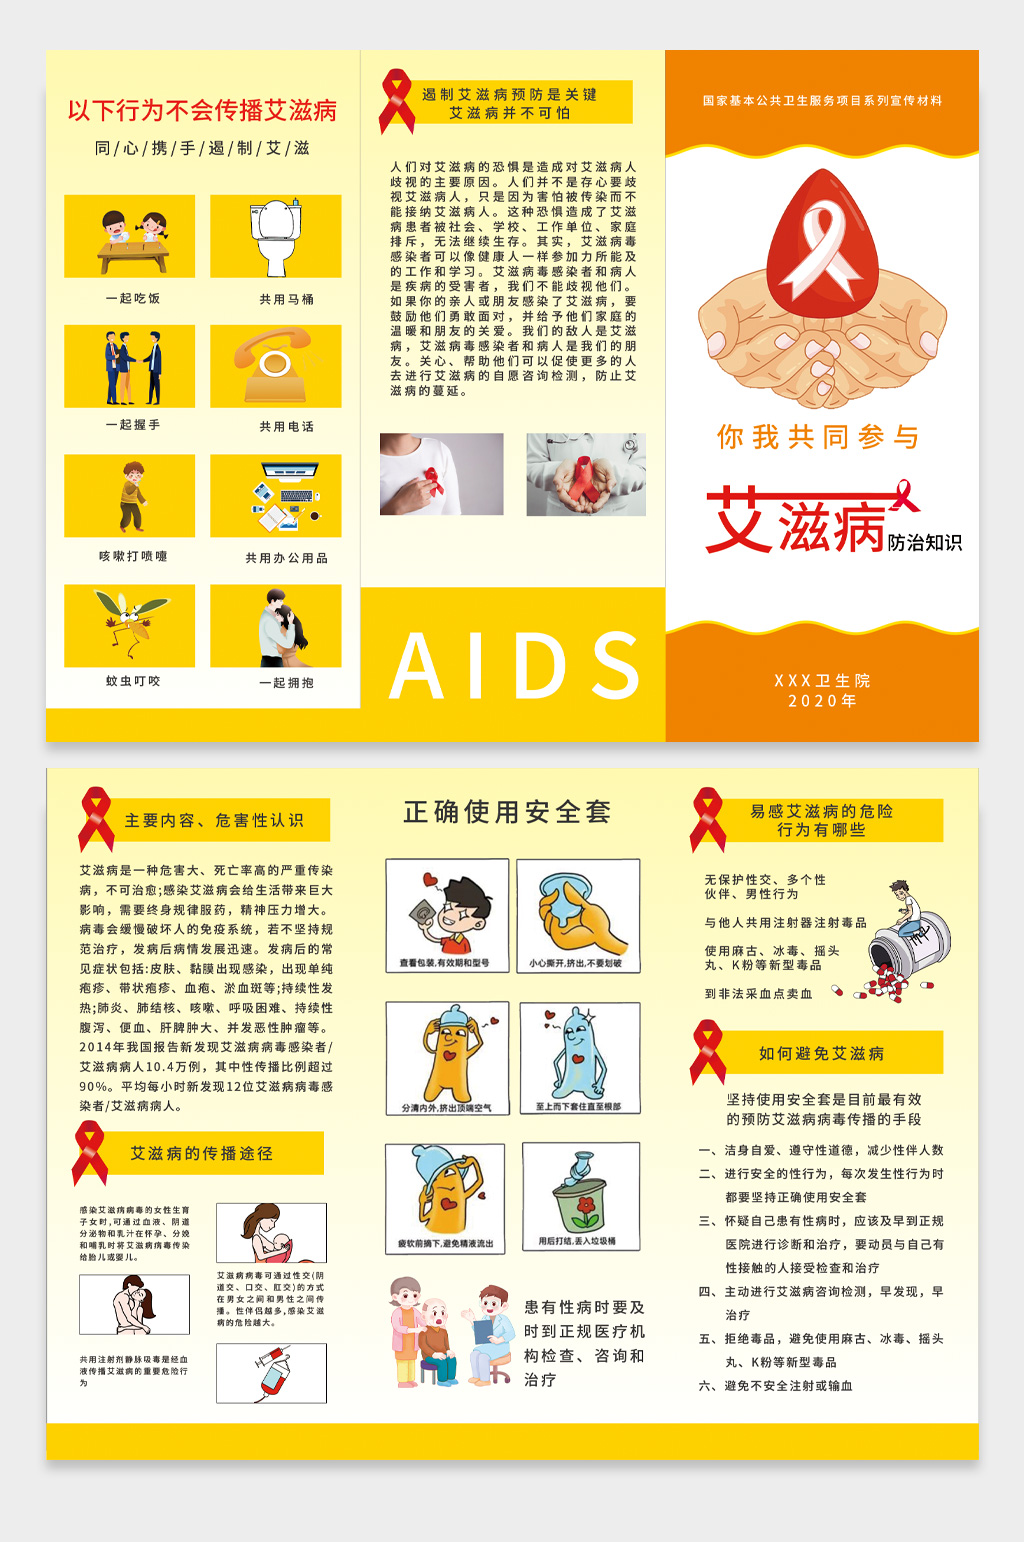 怎样预防艾滋病的常识图片